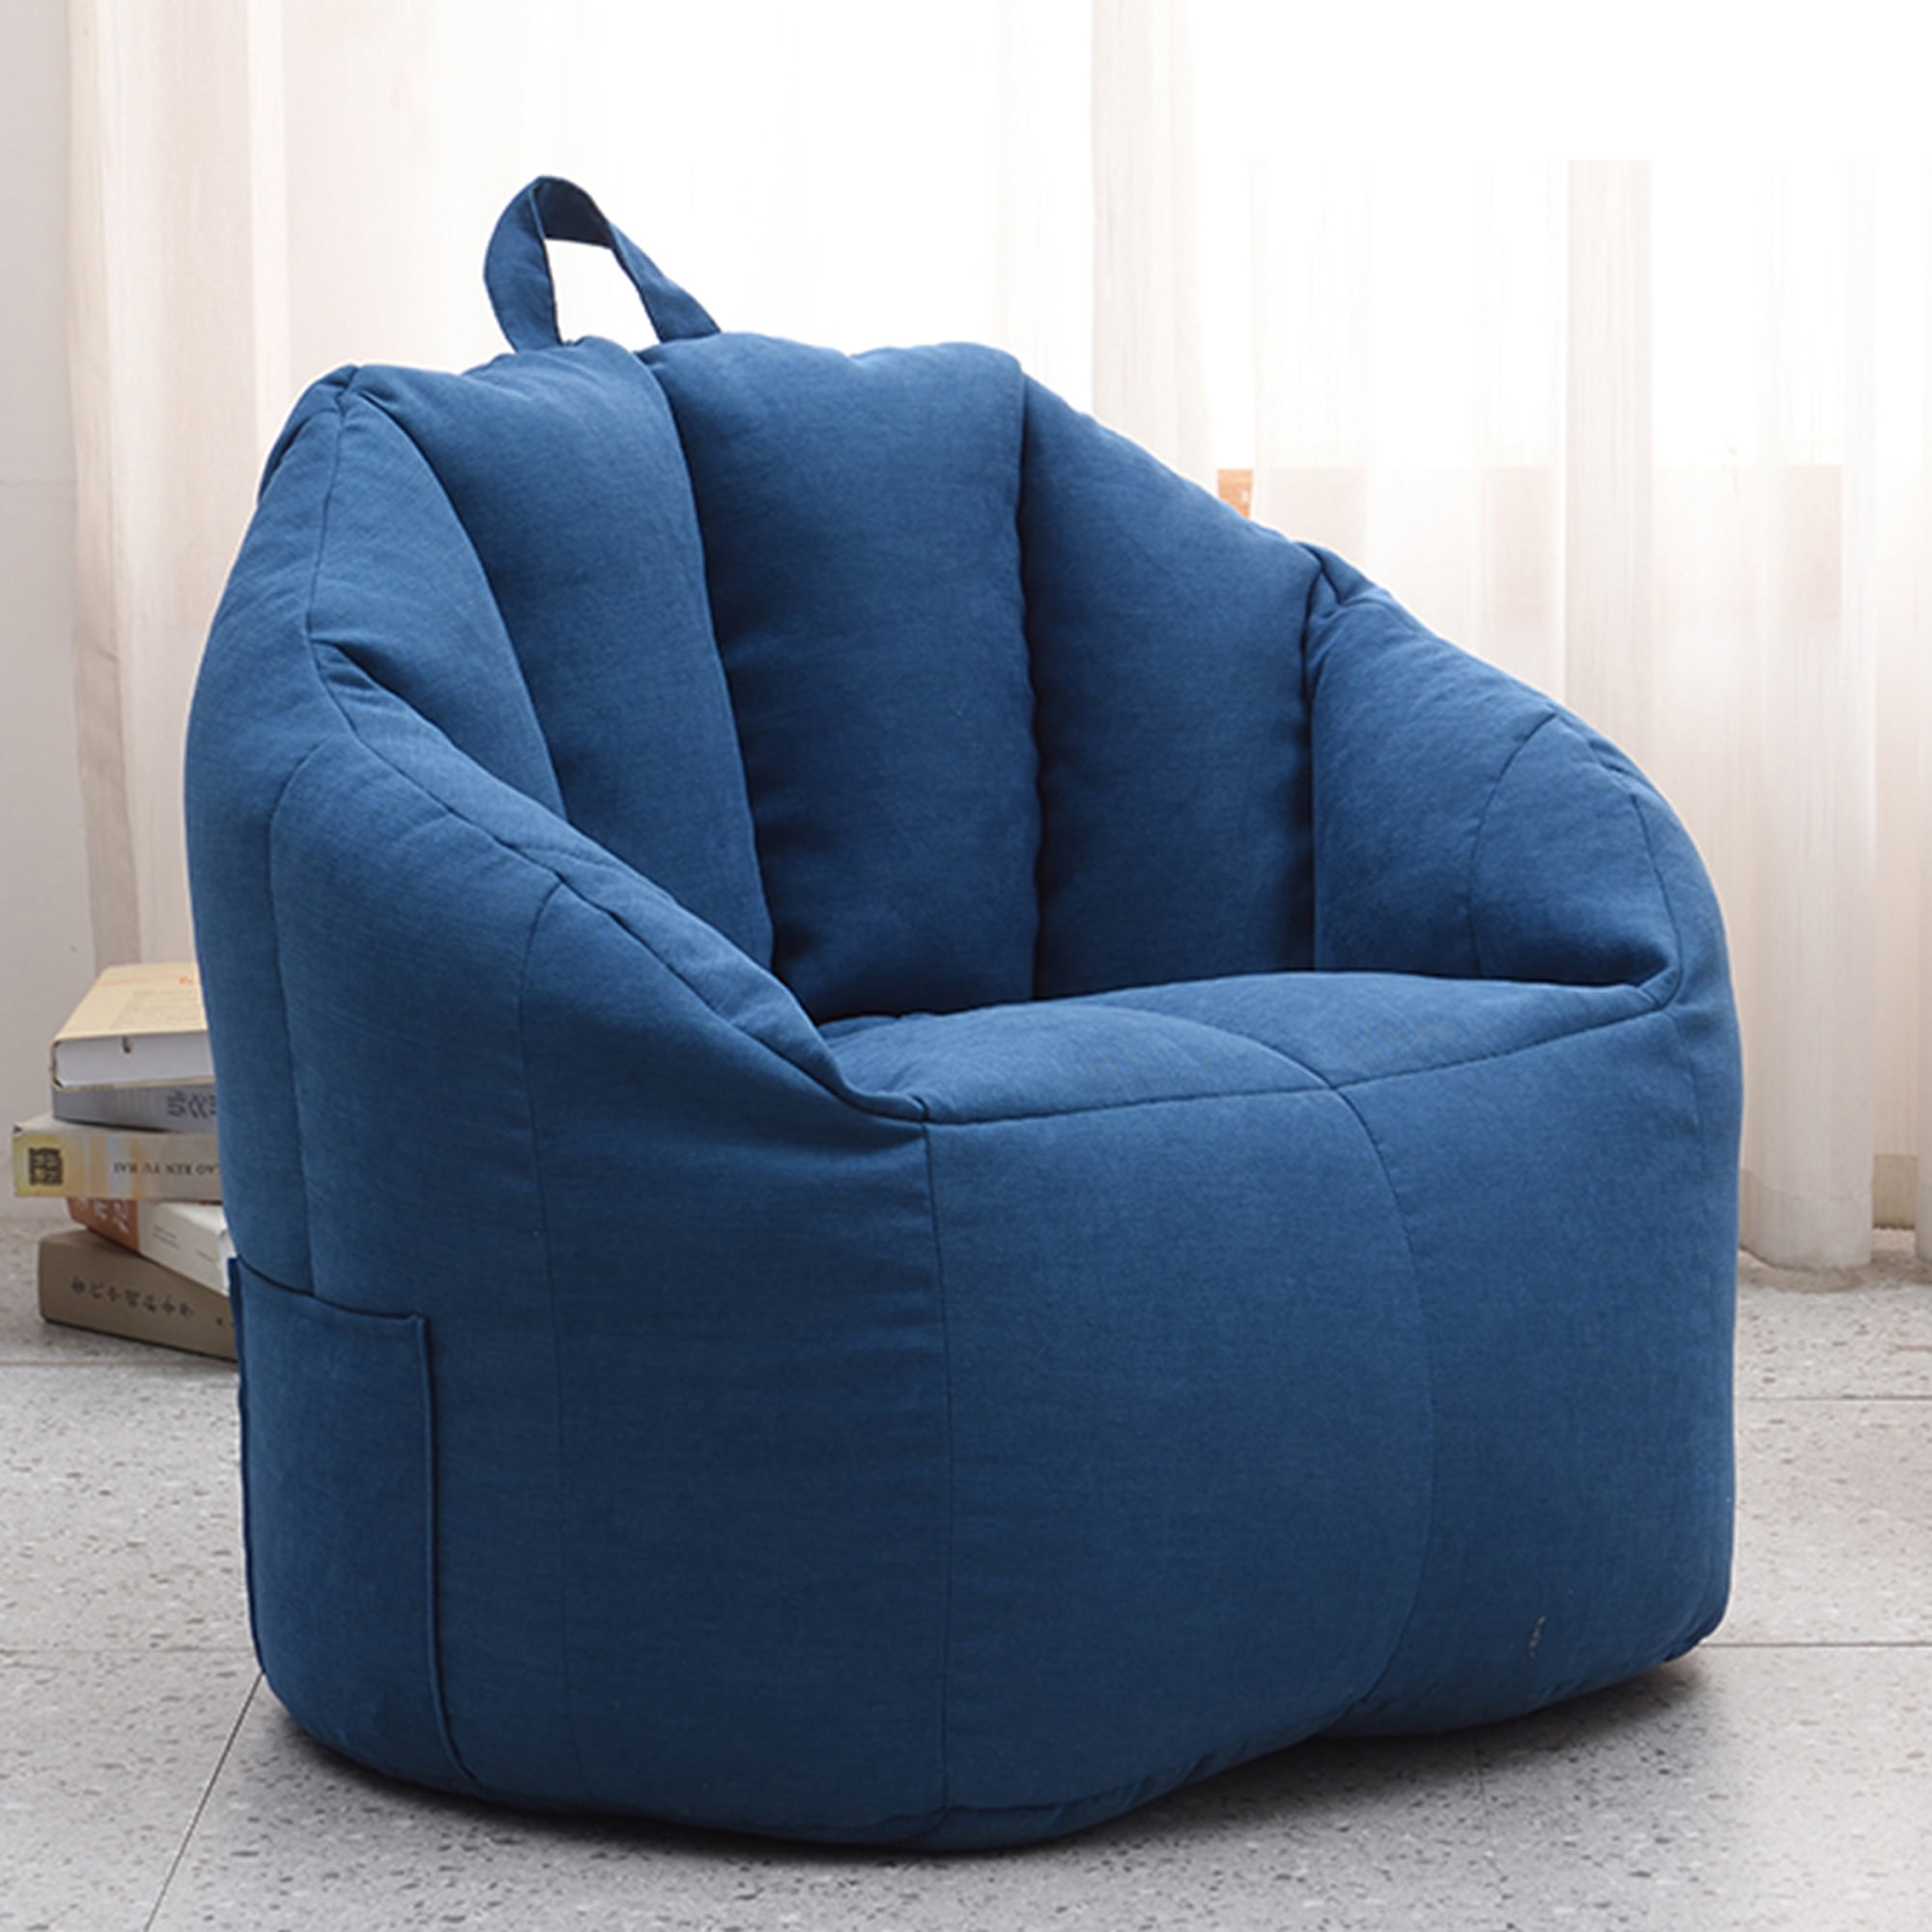 Adult Bean Bag - Chair Design